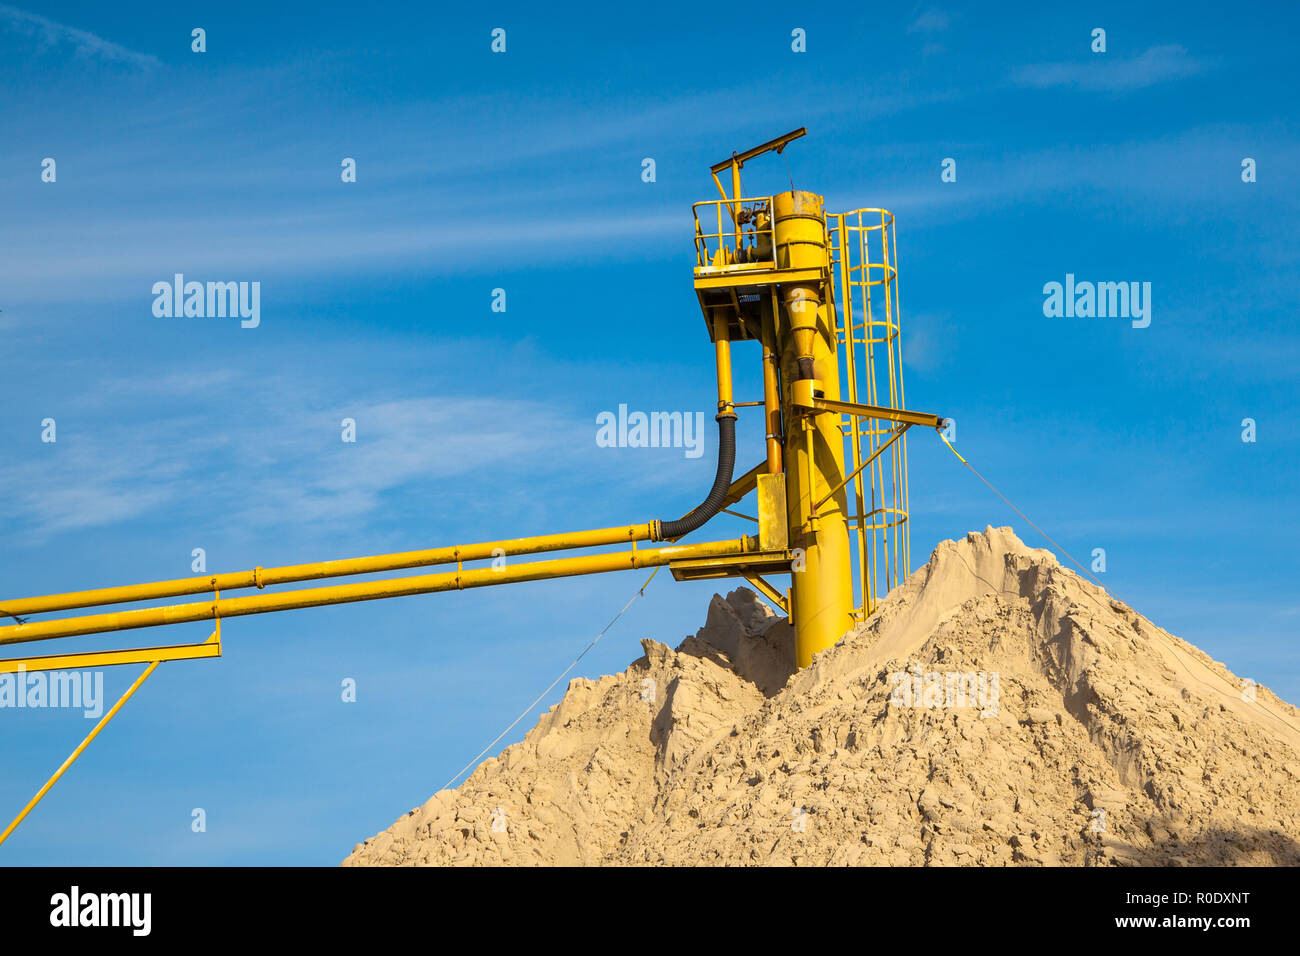 La colline de sable de sable à un site Minig avec ciel bleu Banque D'Images